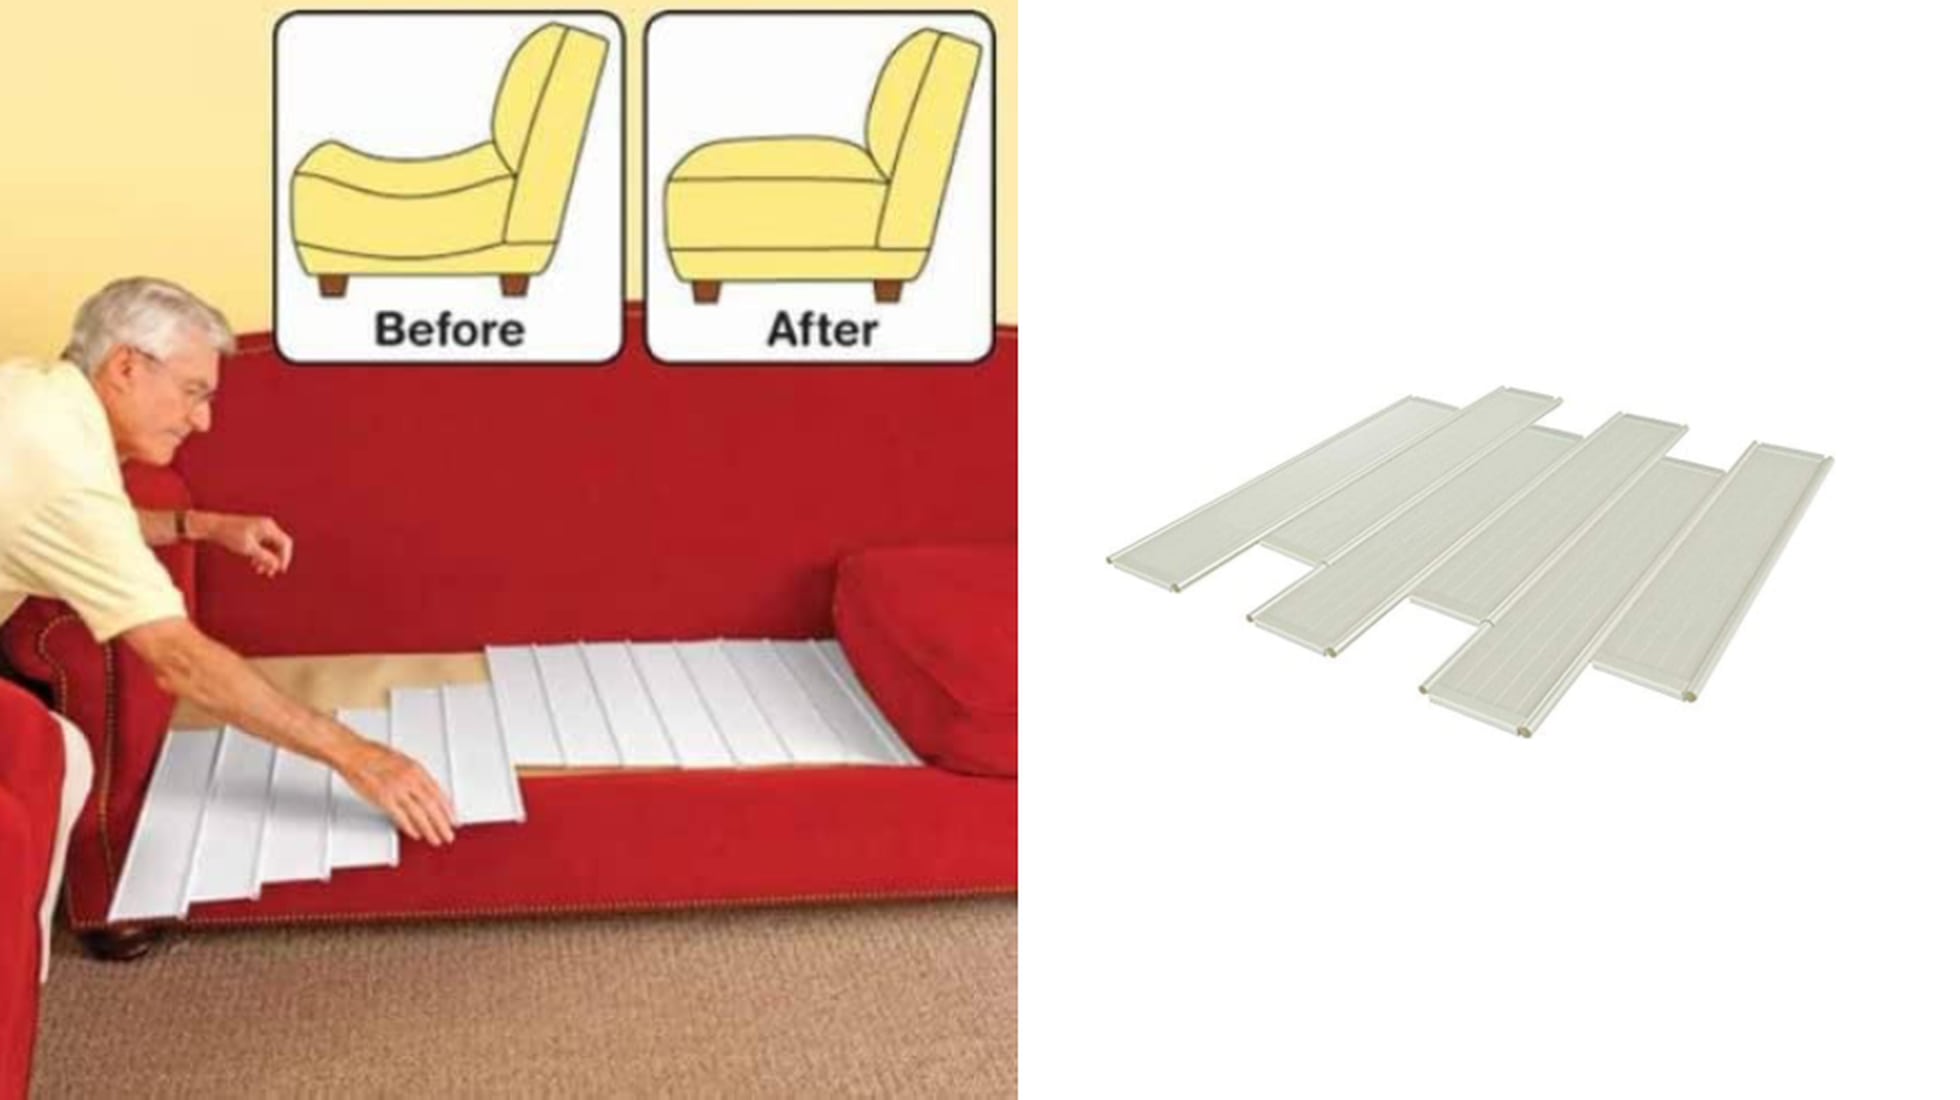 Rectificadores muy fáciles de instalar para reparar tus sofás hundidos